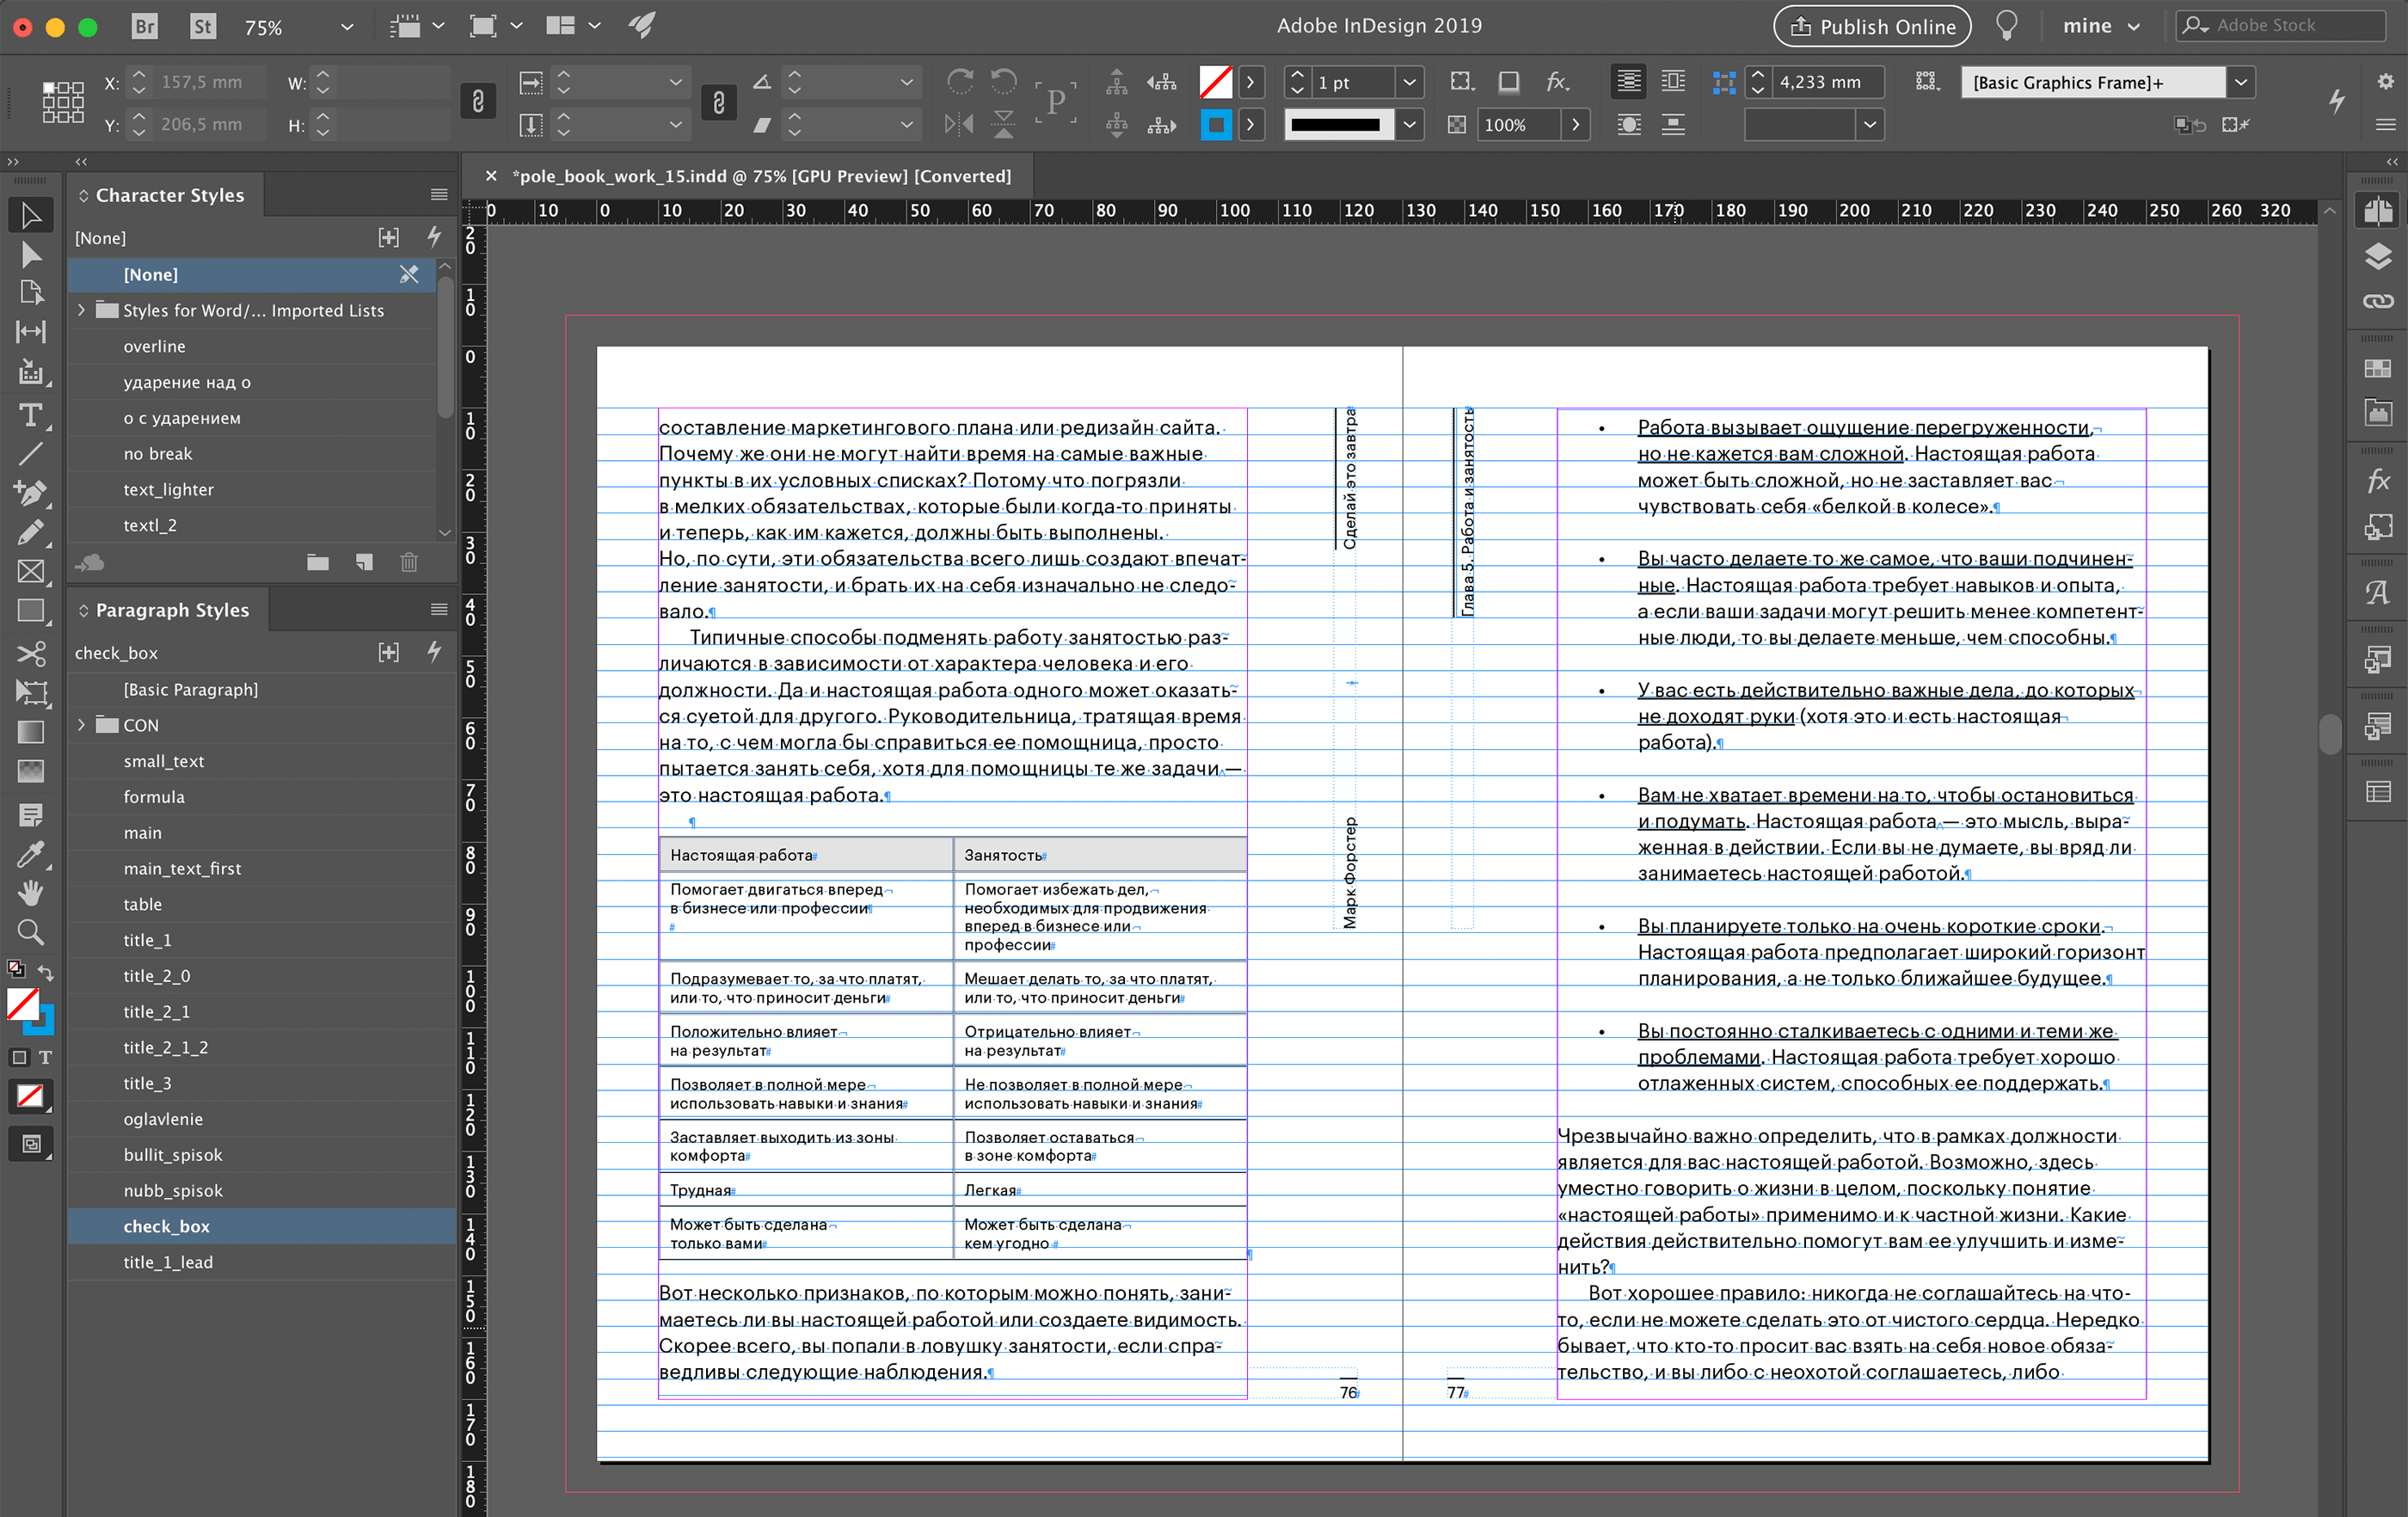 Скриншот верстки разворота книги в программе Adobe InDesign